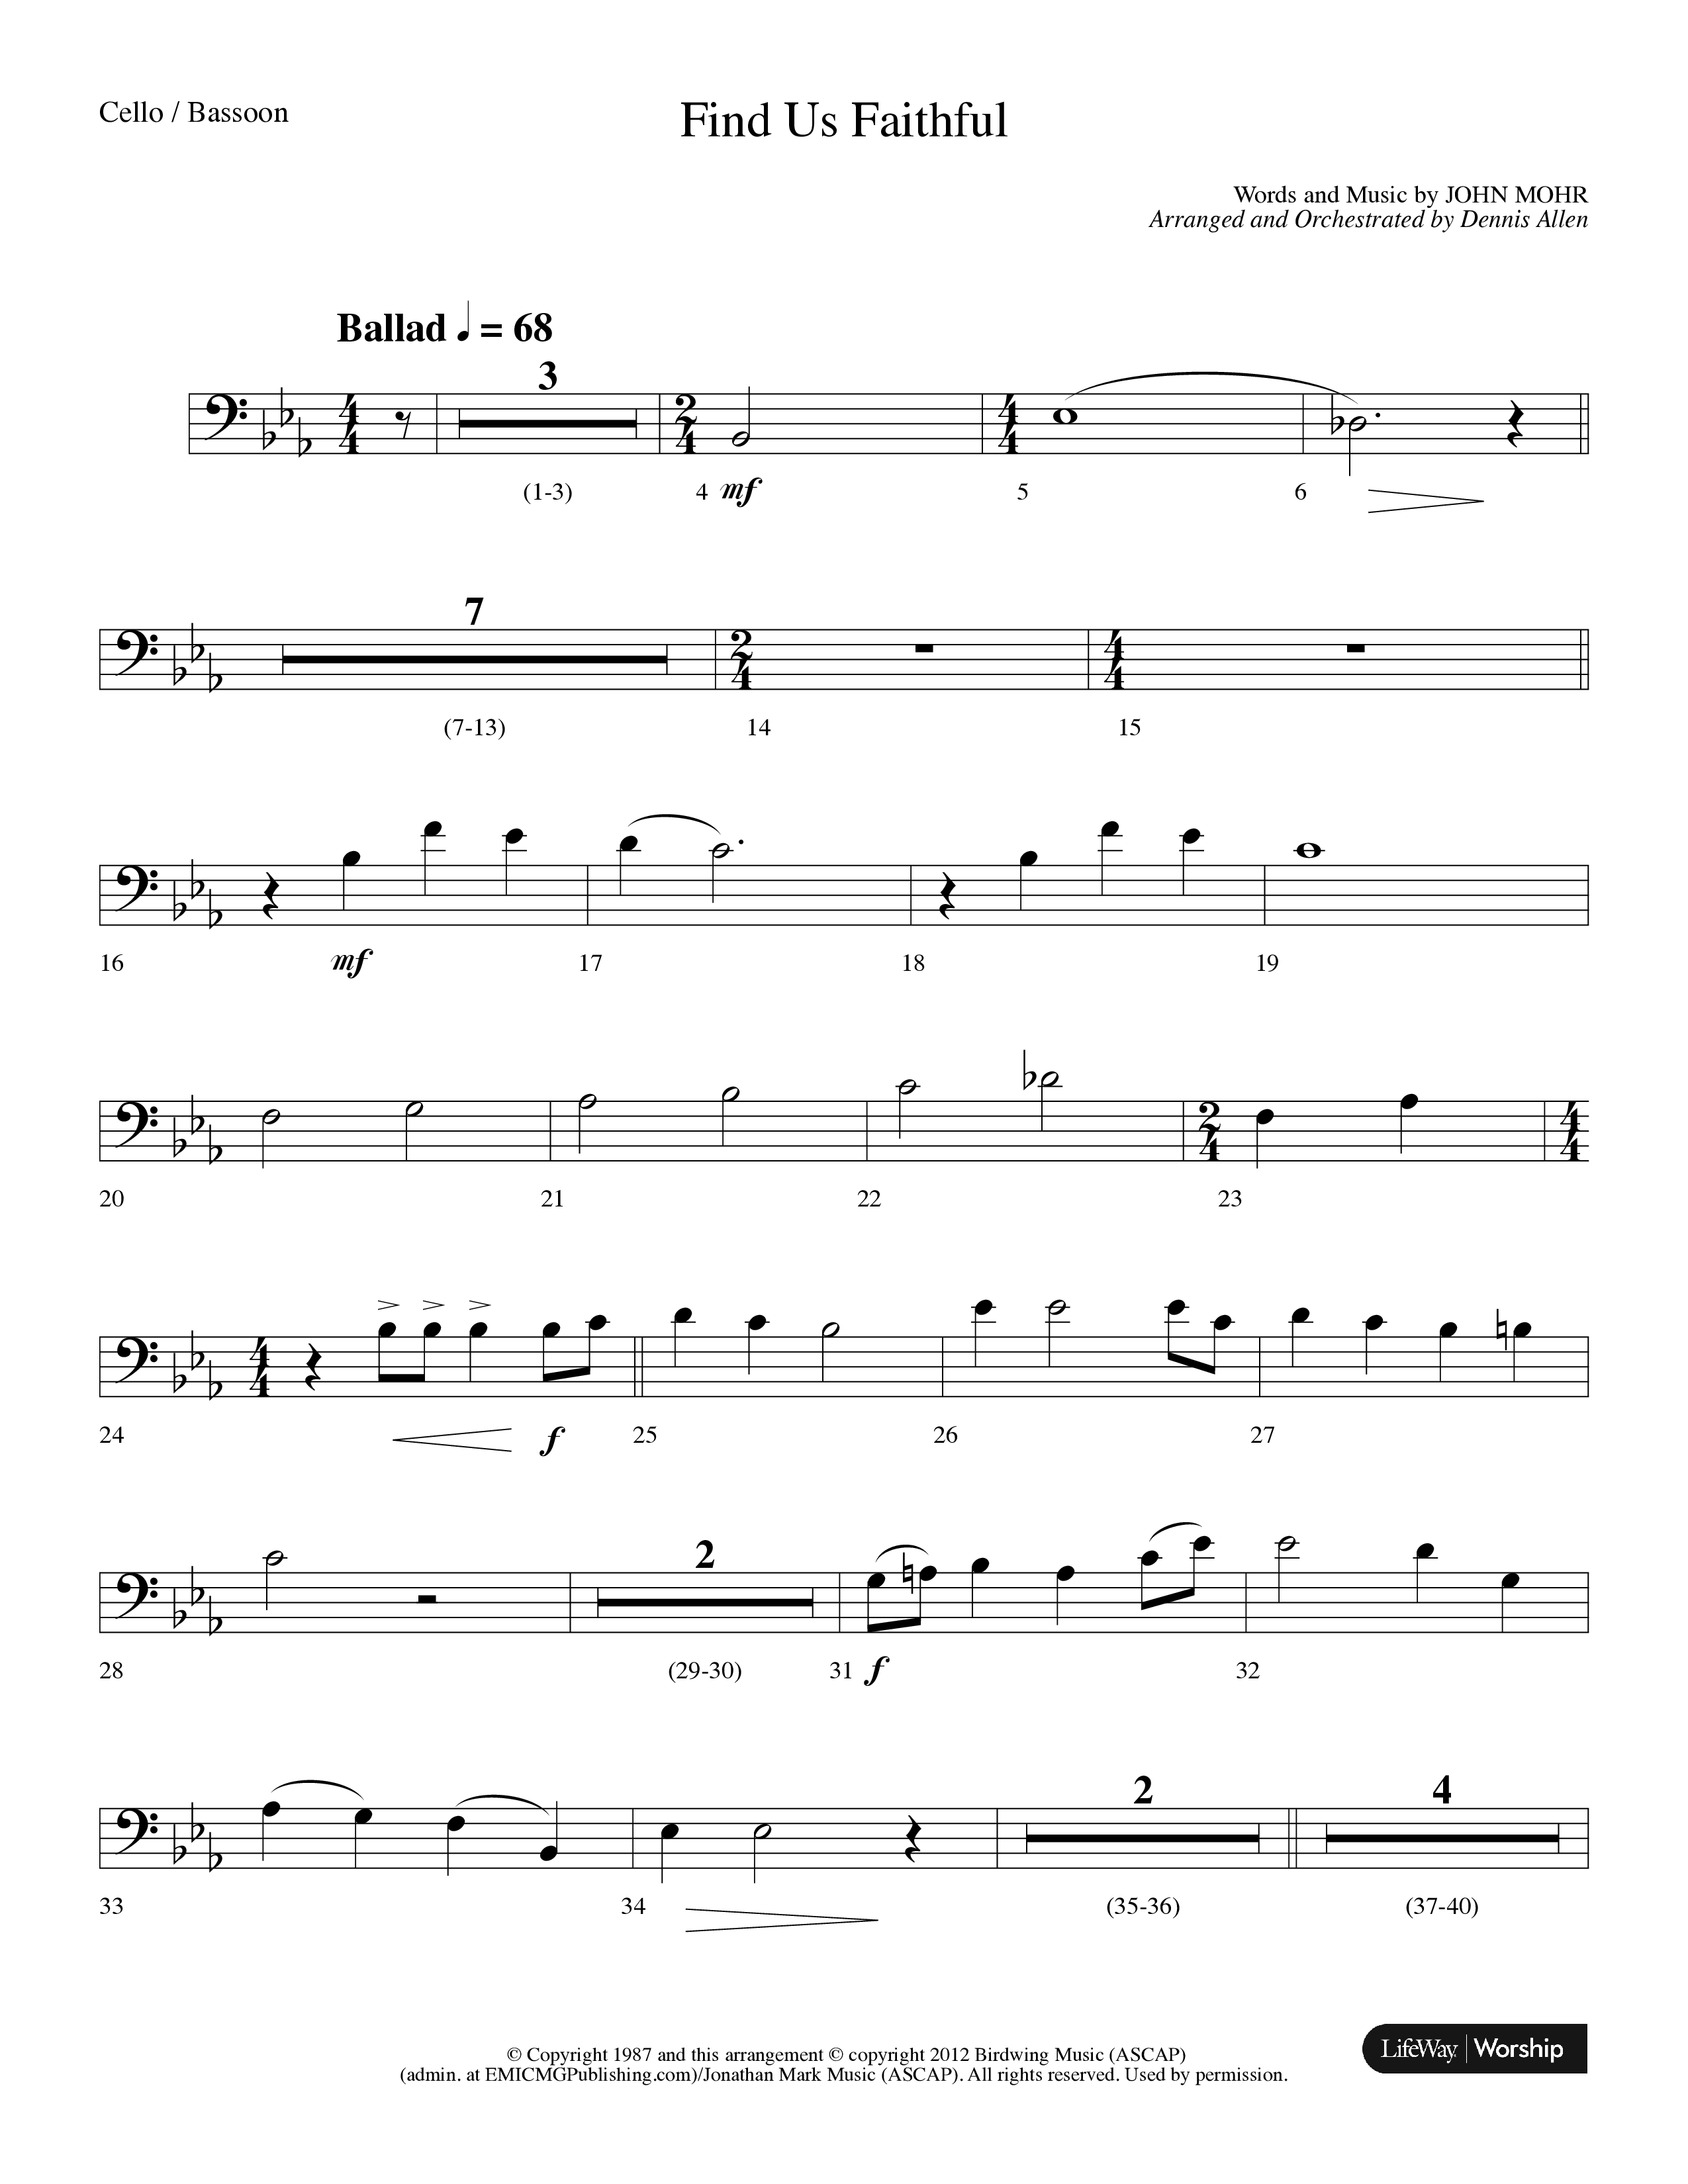 Find Us Faithful (Choral Anthem SATB) Cello (Lifeway Choral / Arr. Dennis Allen)